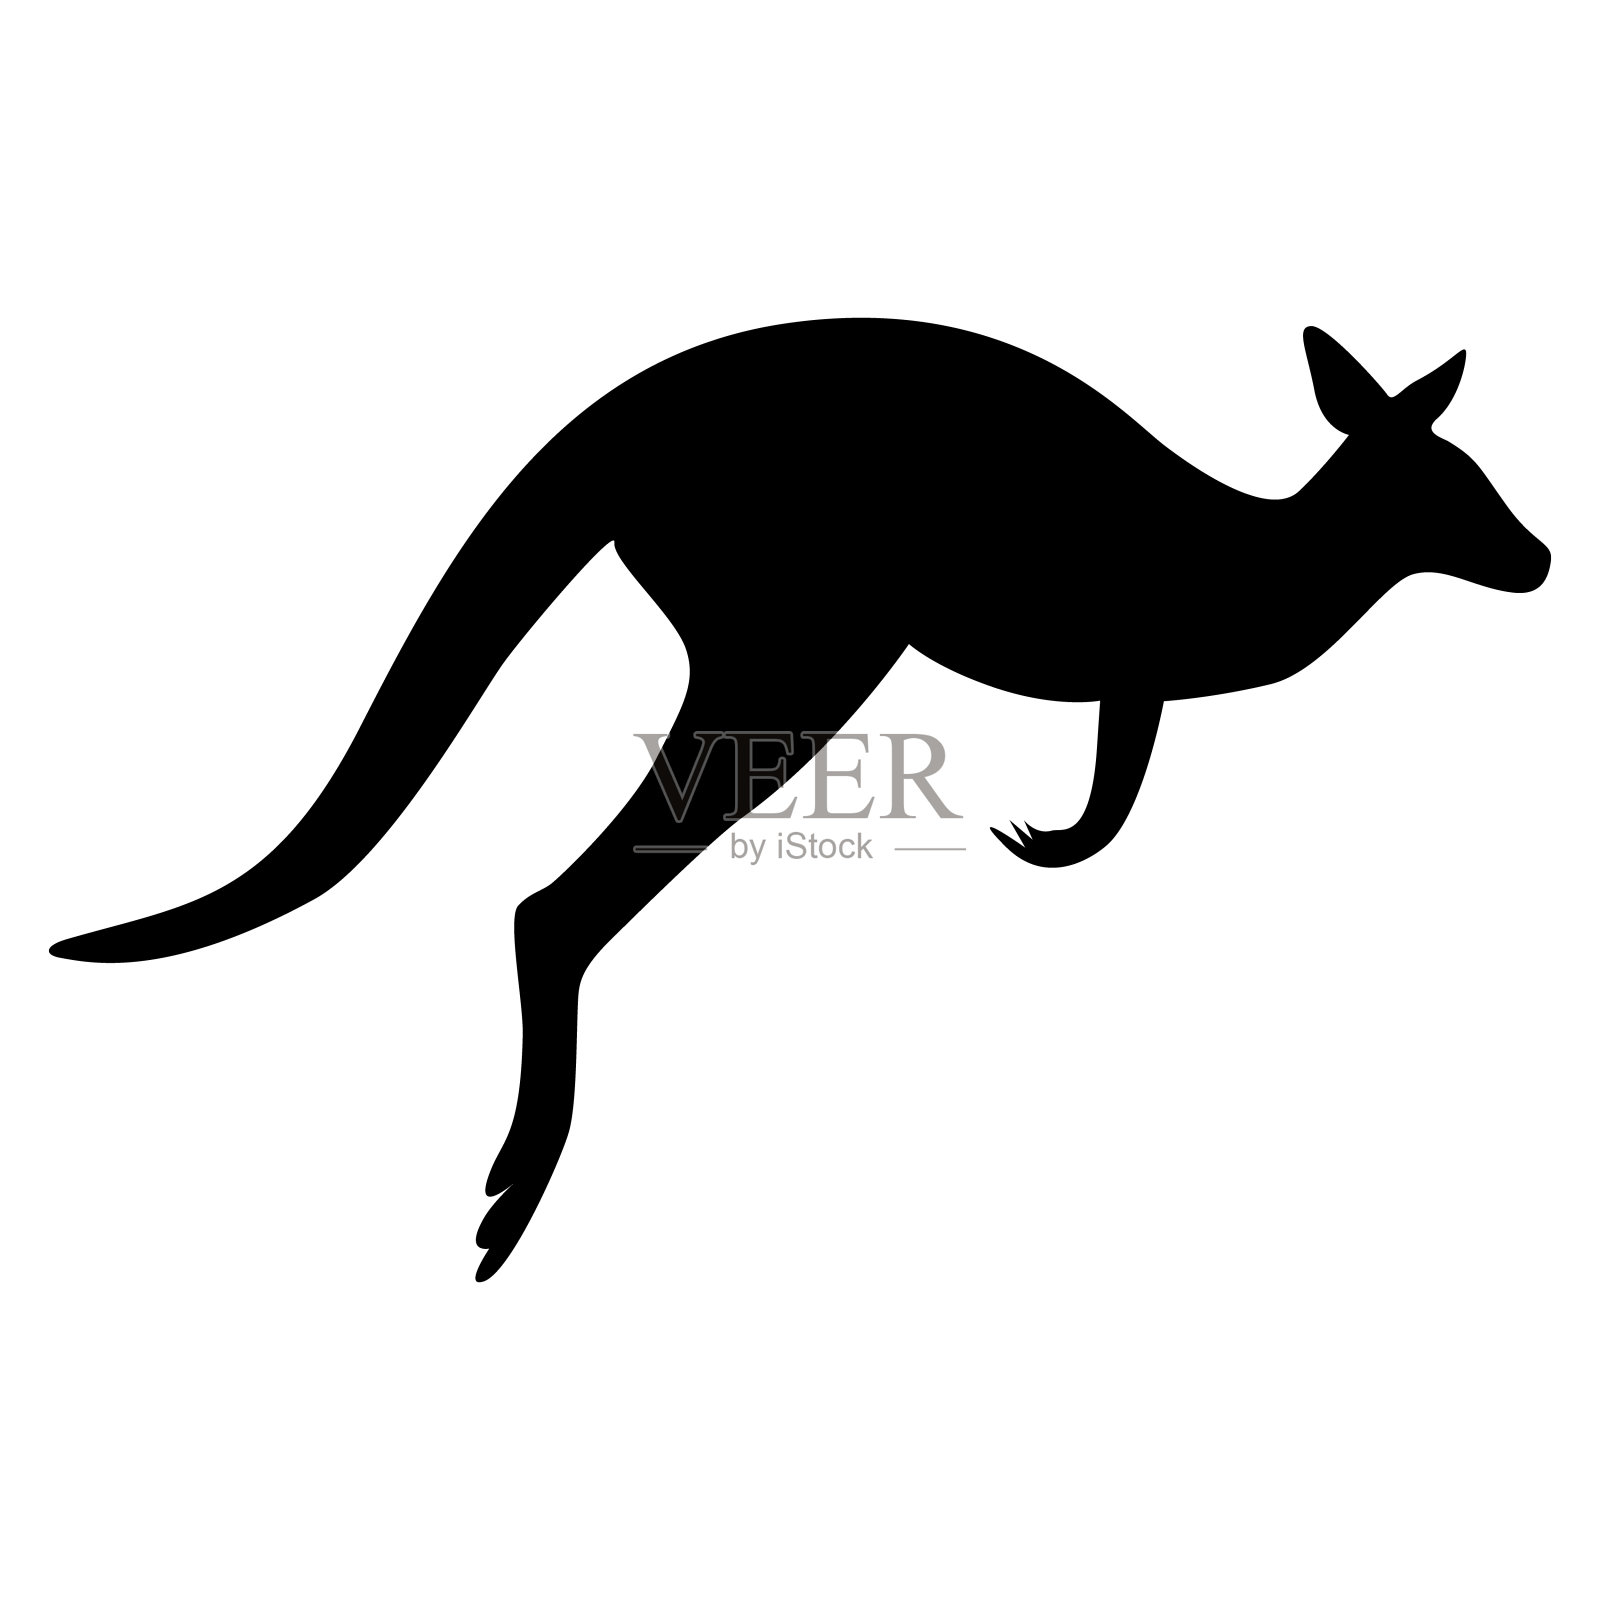 袋鼠是澳大利亚的象征设计元素图片